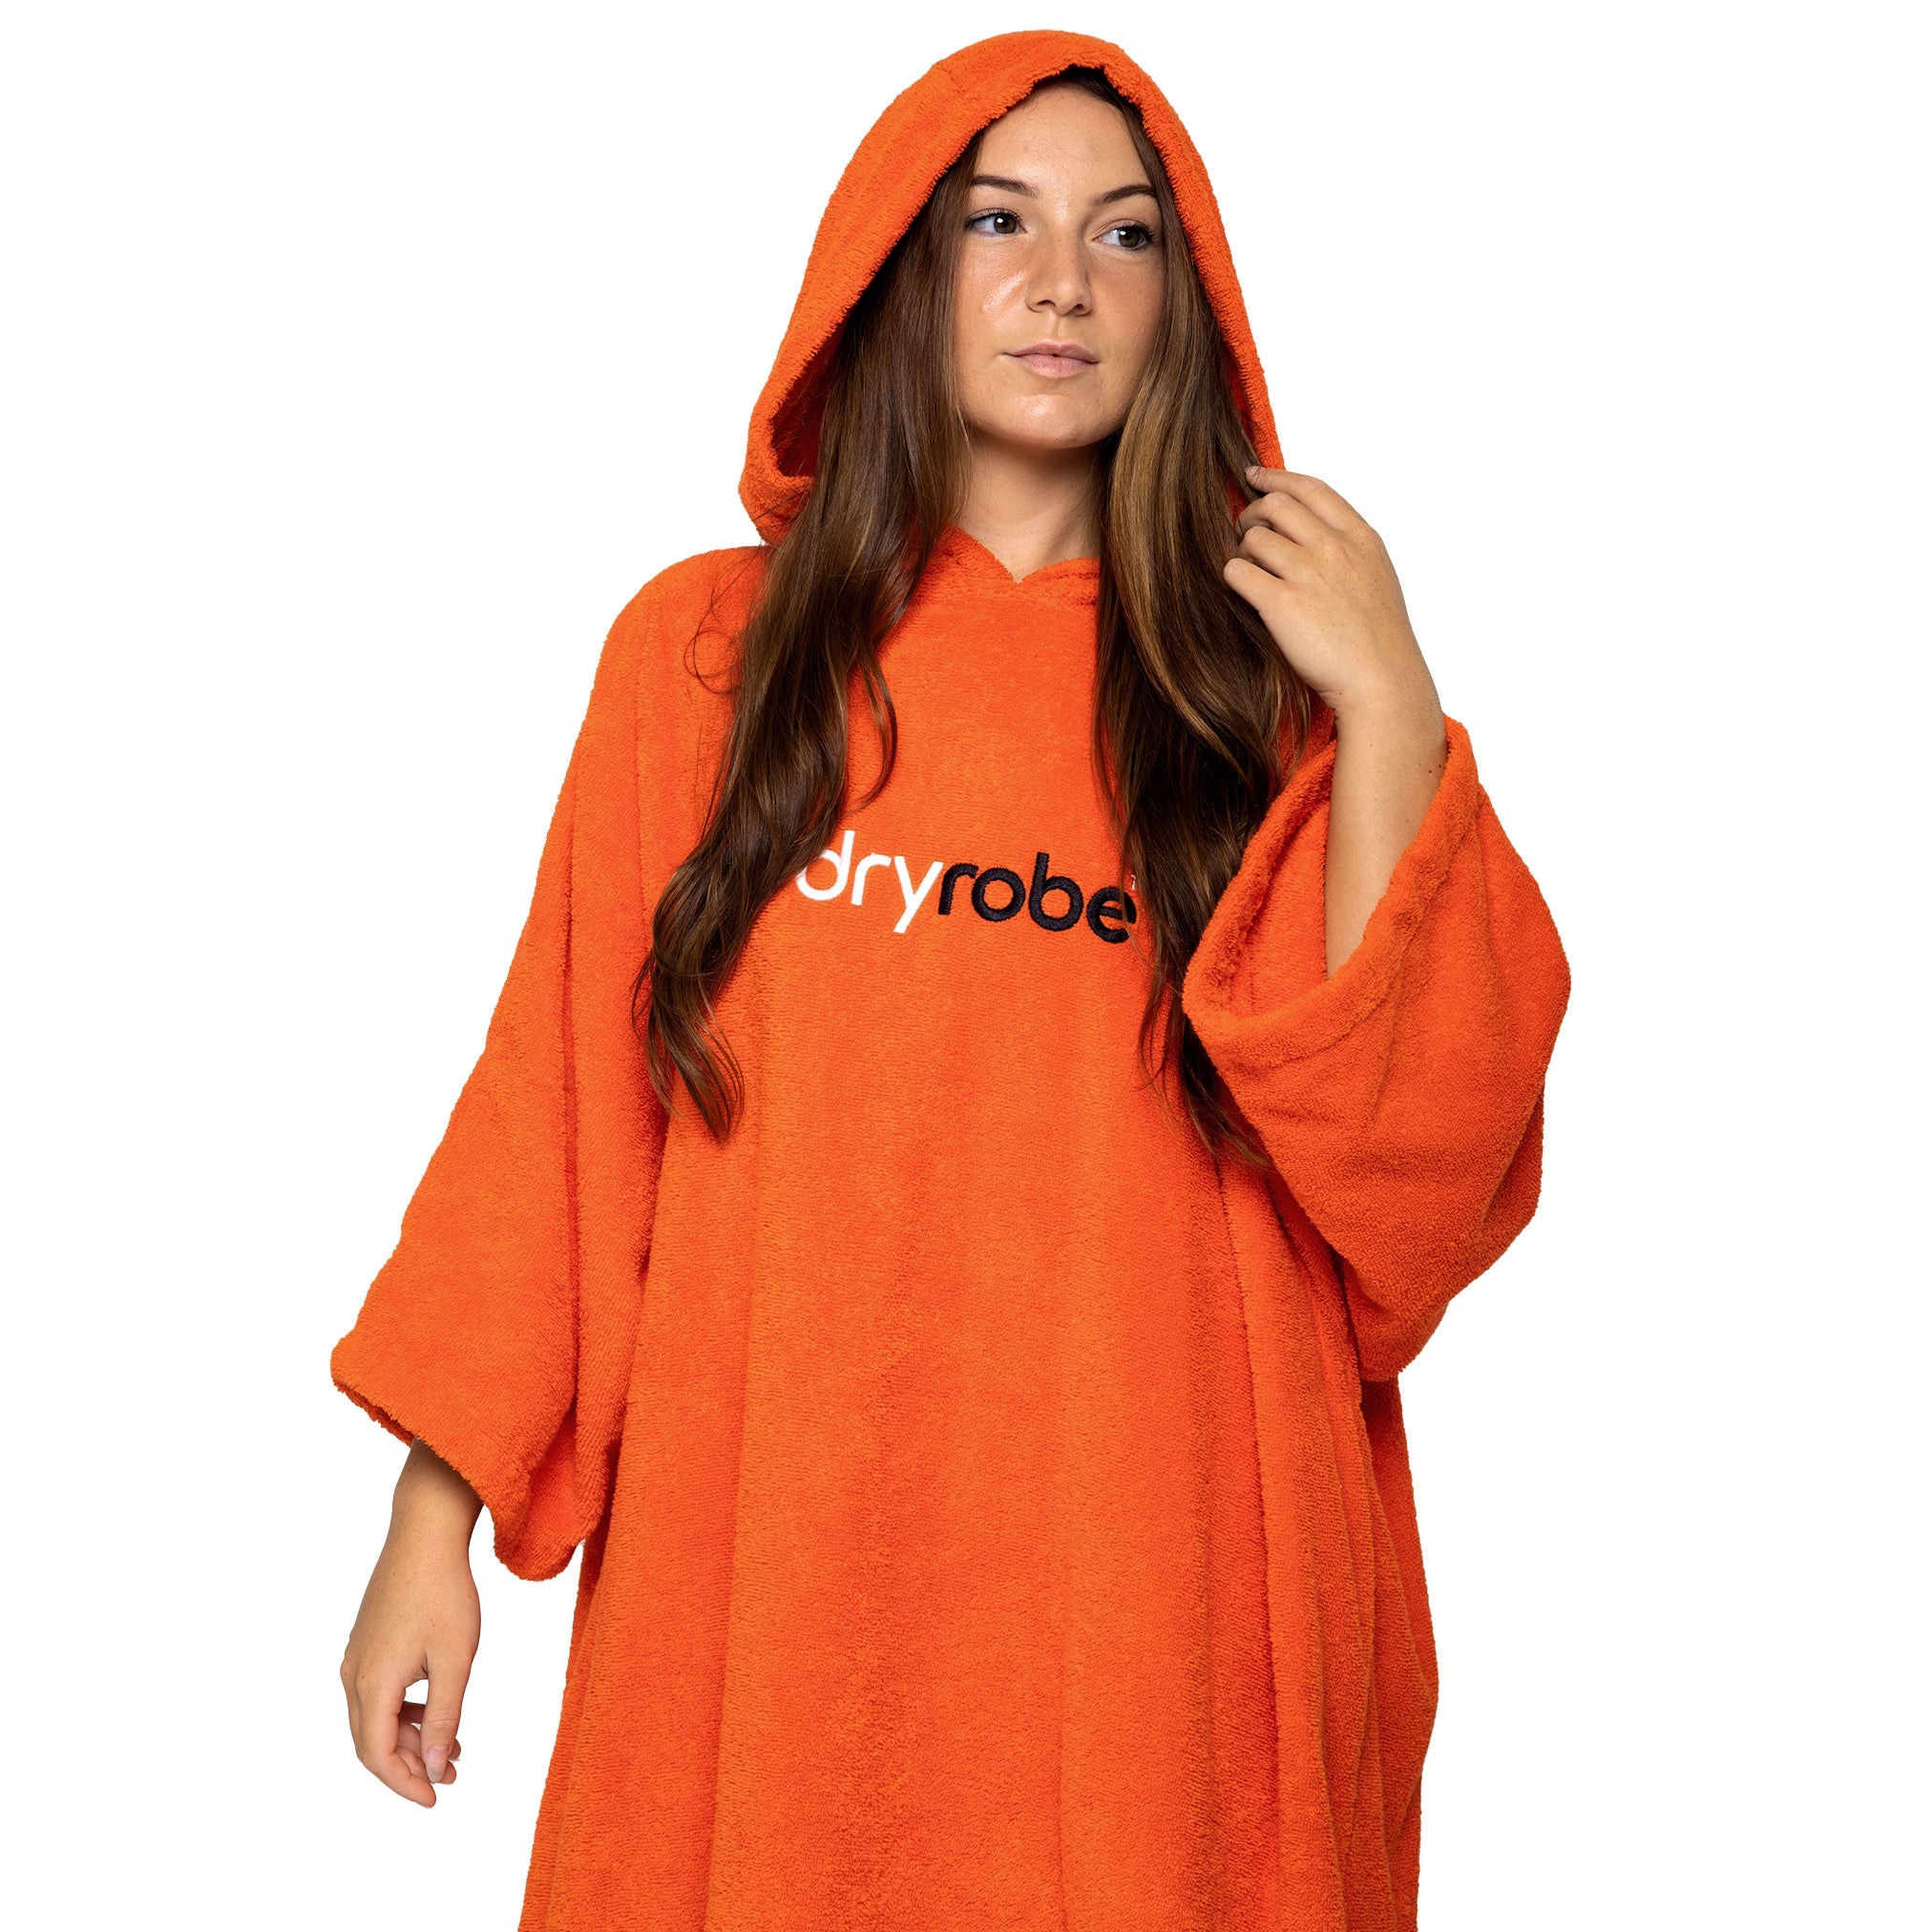 Orange towel dryrobe® changing robe showing hood up